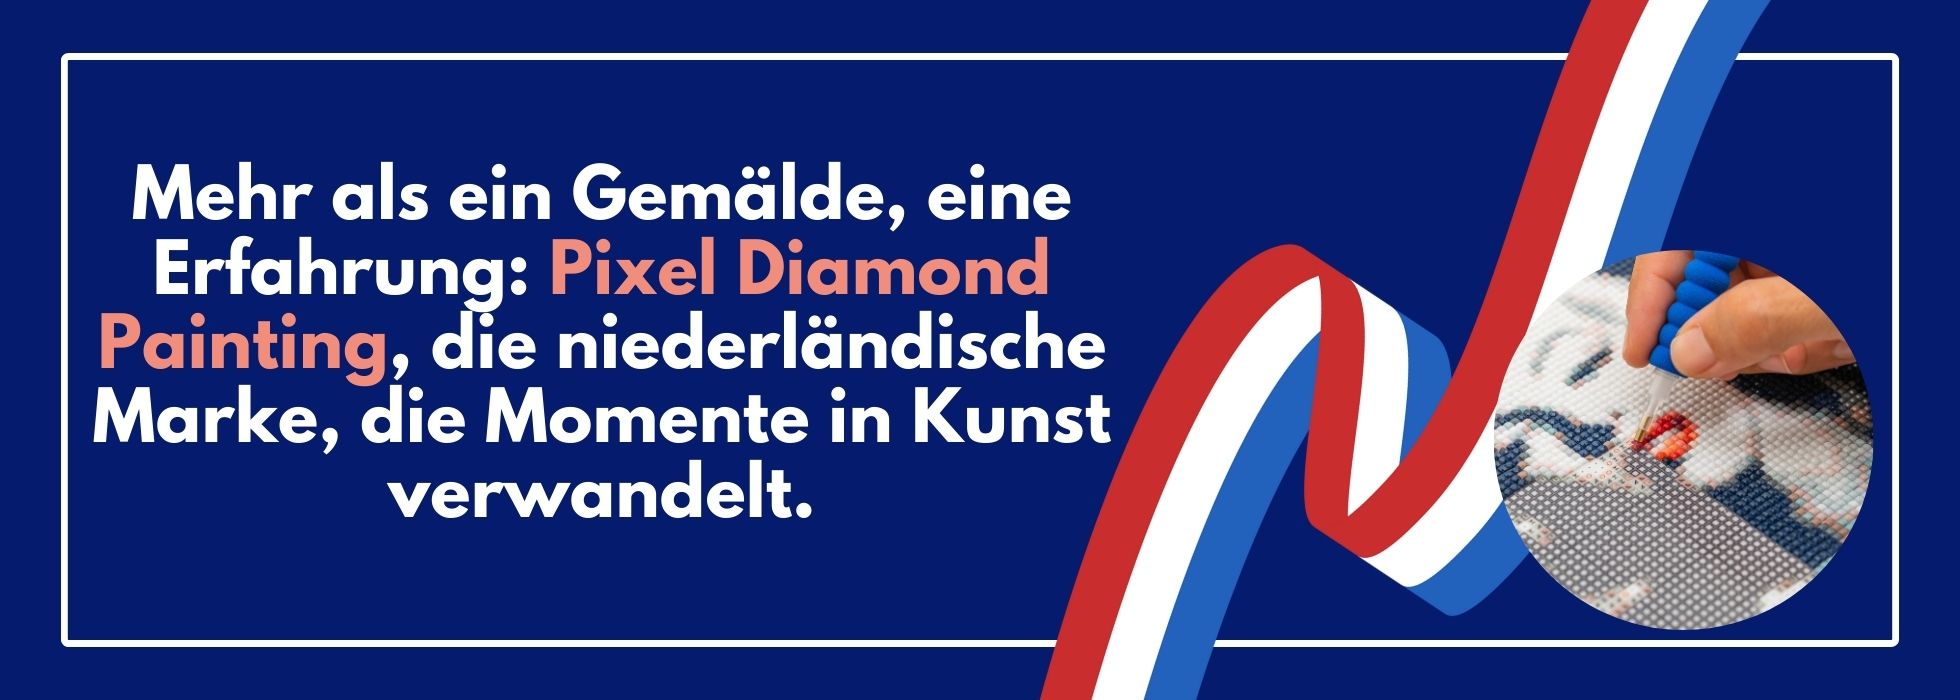 Mehr als ein Gemälde, eine Erfahrung: Pixel Diamond Painting, die niederländische Marke, die Momente in Kunst verwandelt.